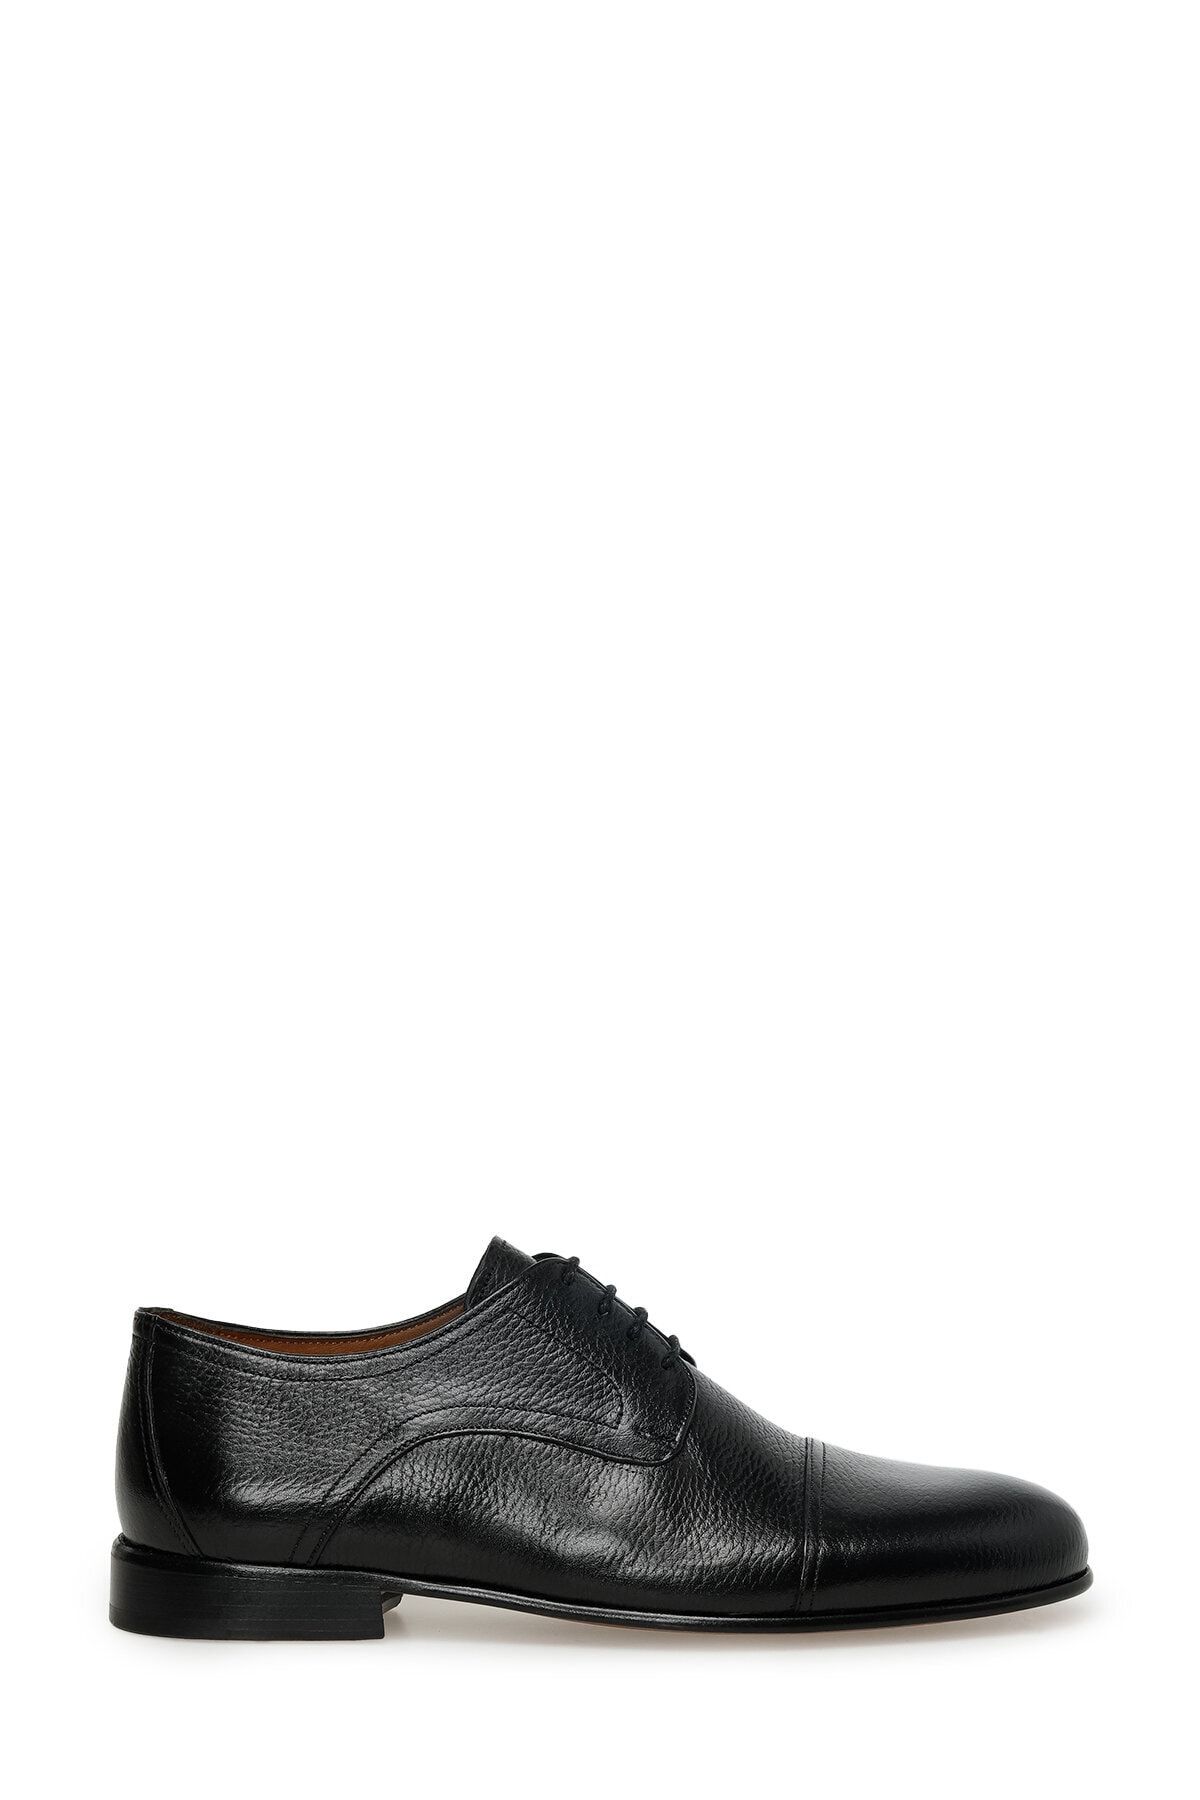 İnci Moore 3fx Lacivert Erkek Klasik Ayakkabı